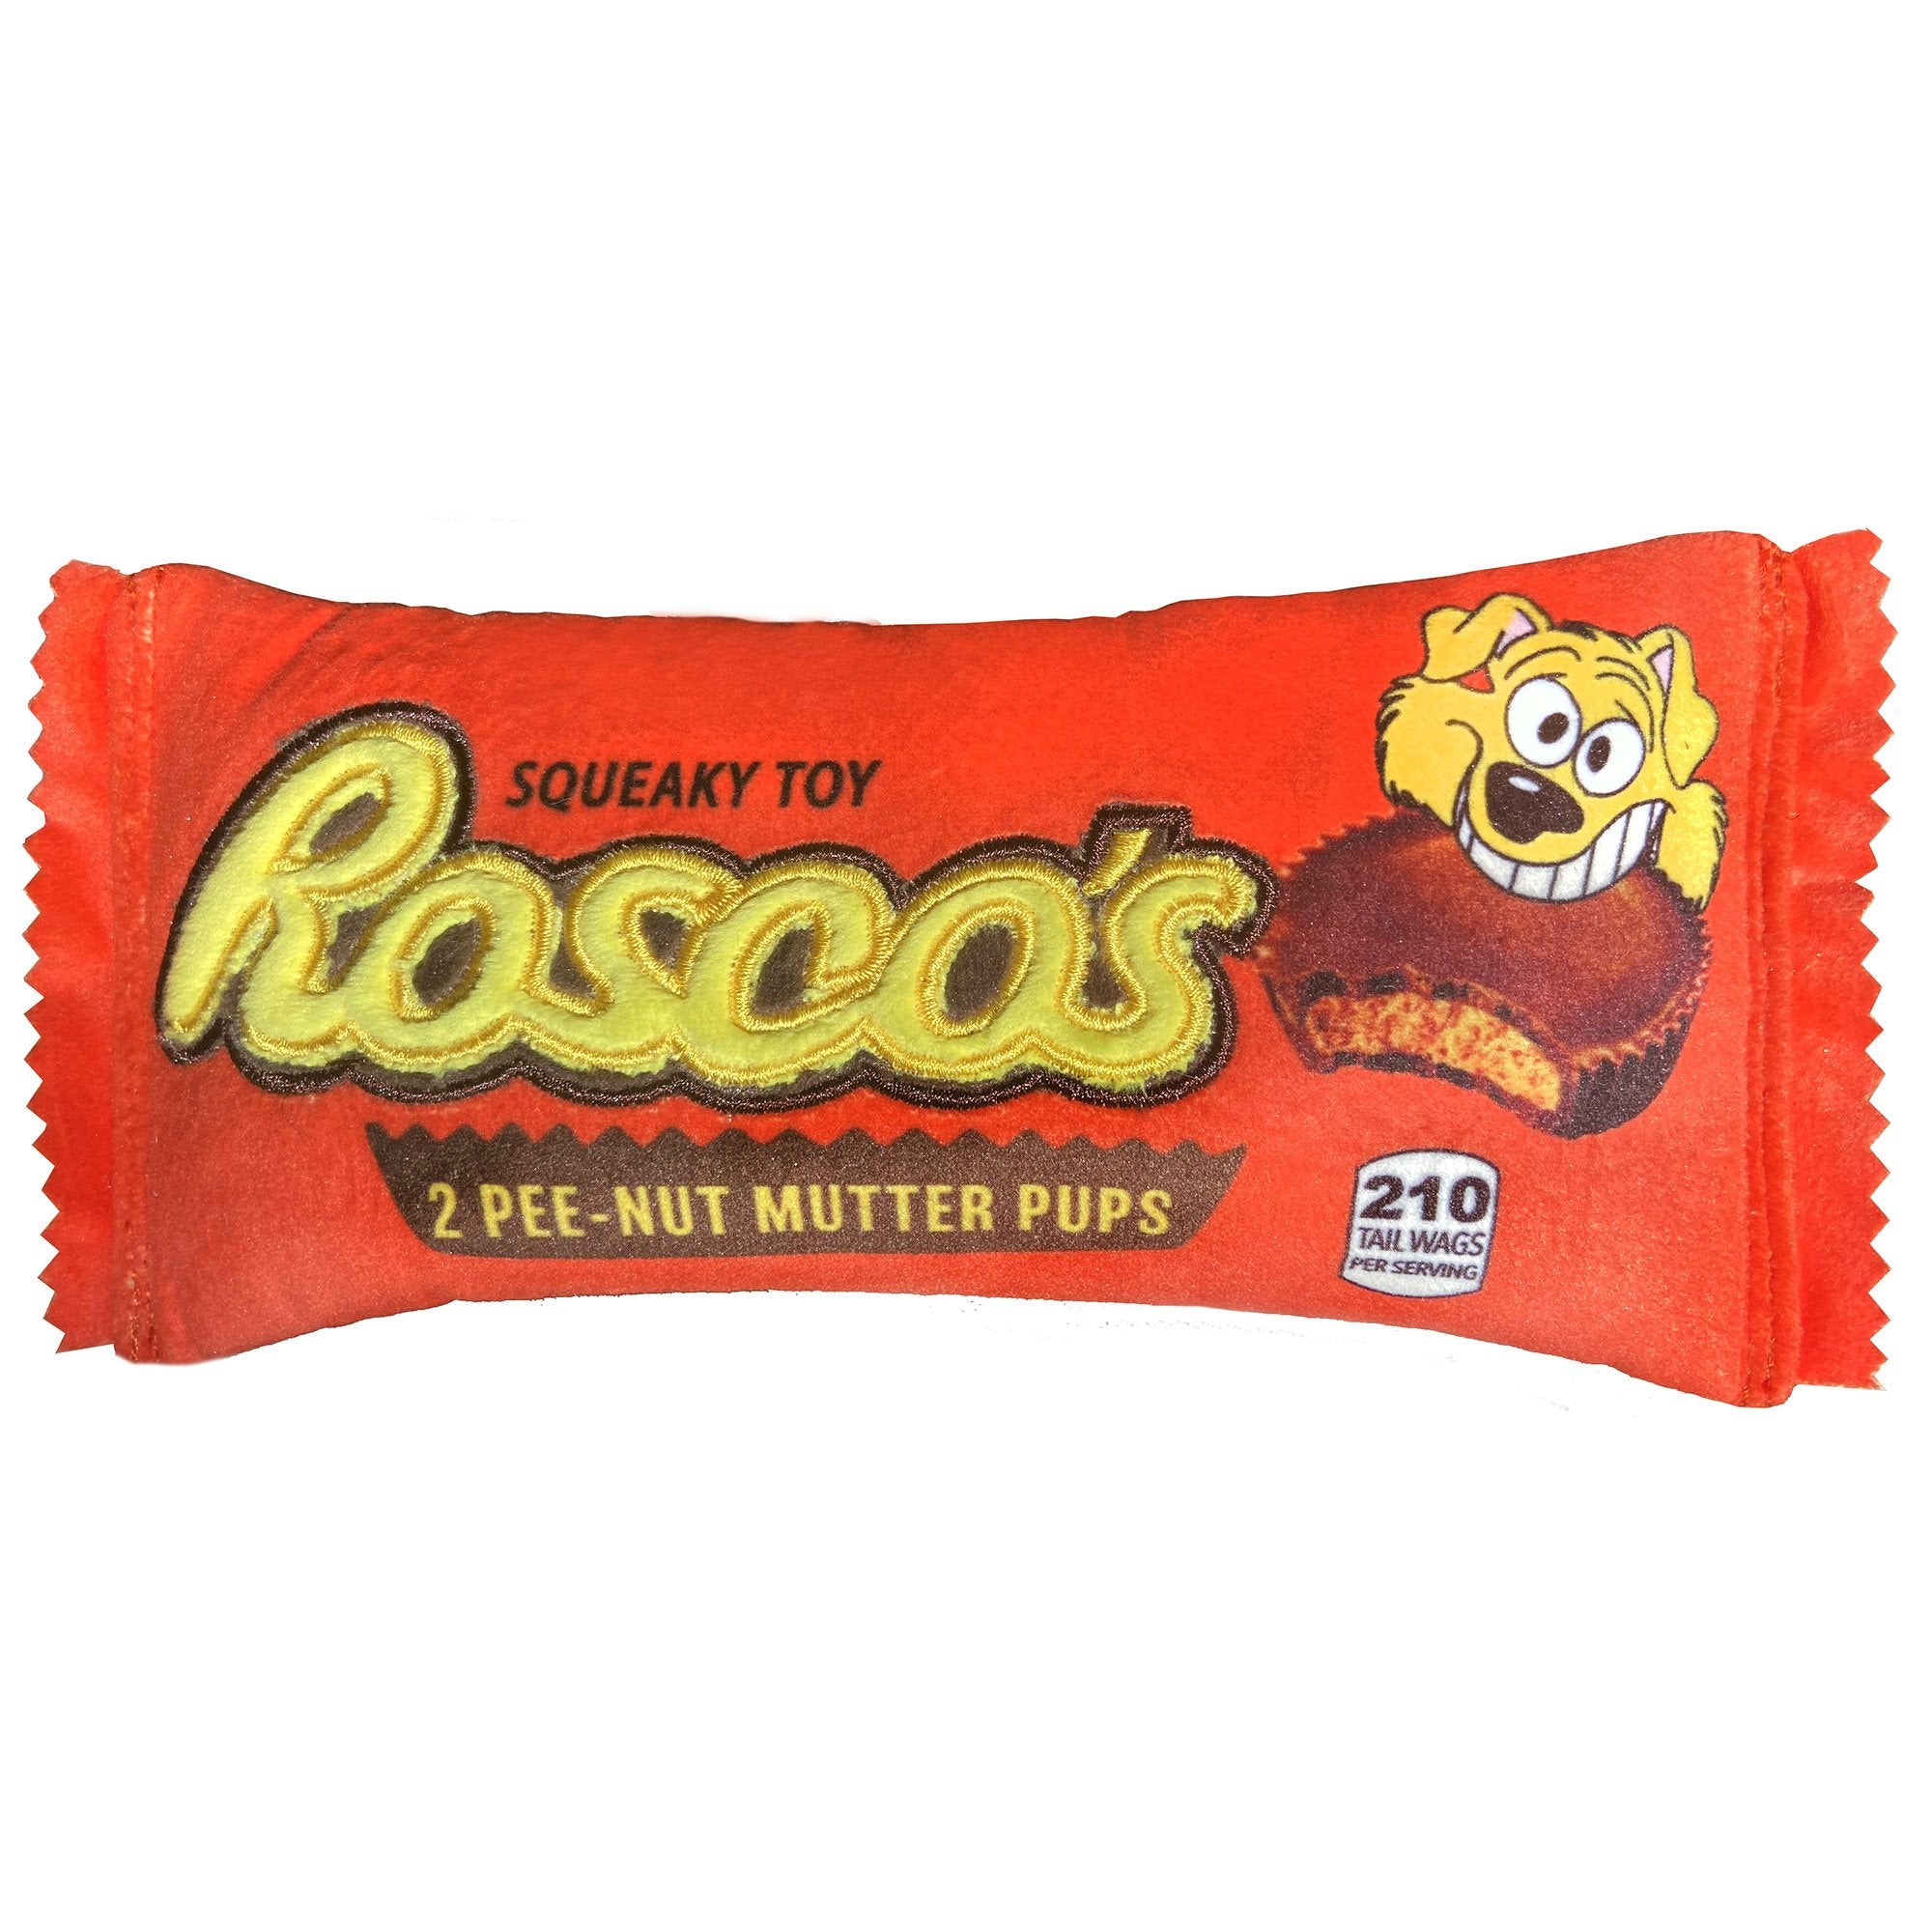 Lulubelles - Rosco's Pee-Nut Mutter Pups